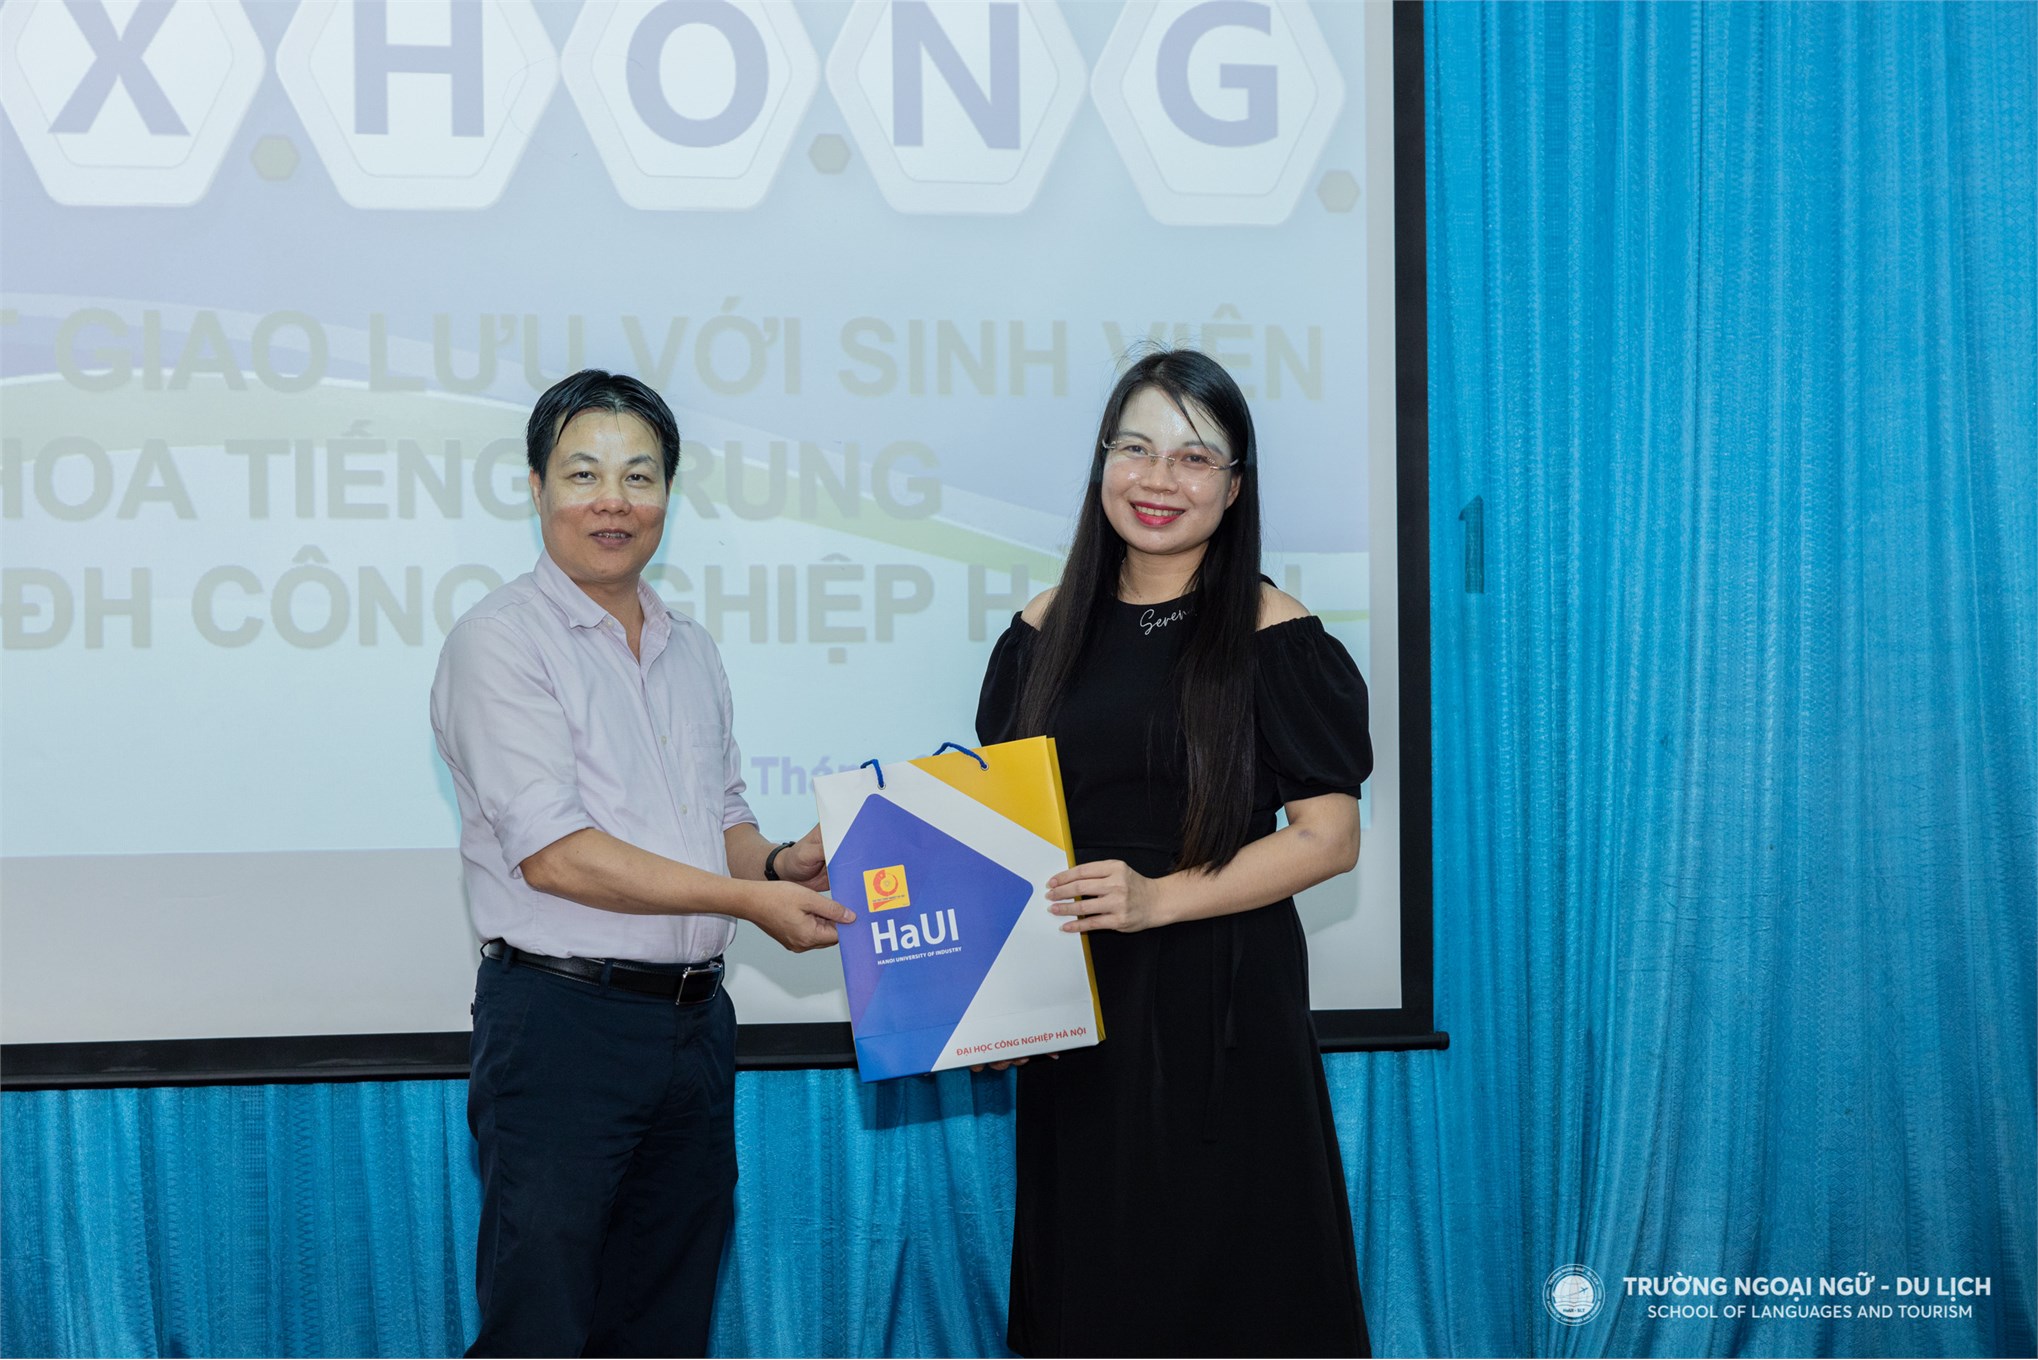 Tiếp đón và làm việc với Công ty TNHH Công nghệ Kỹ thuật Ngân Hà – Tập đoàn Texhong